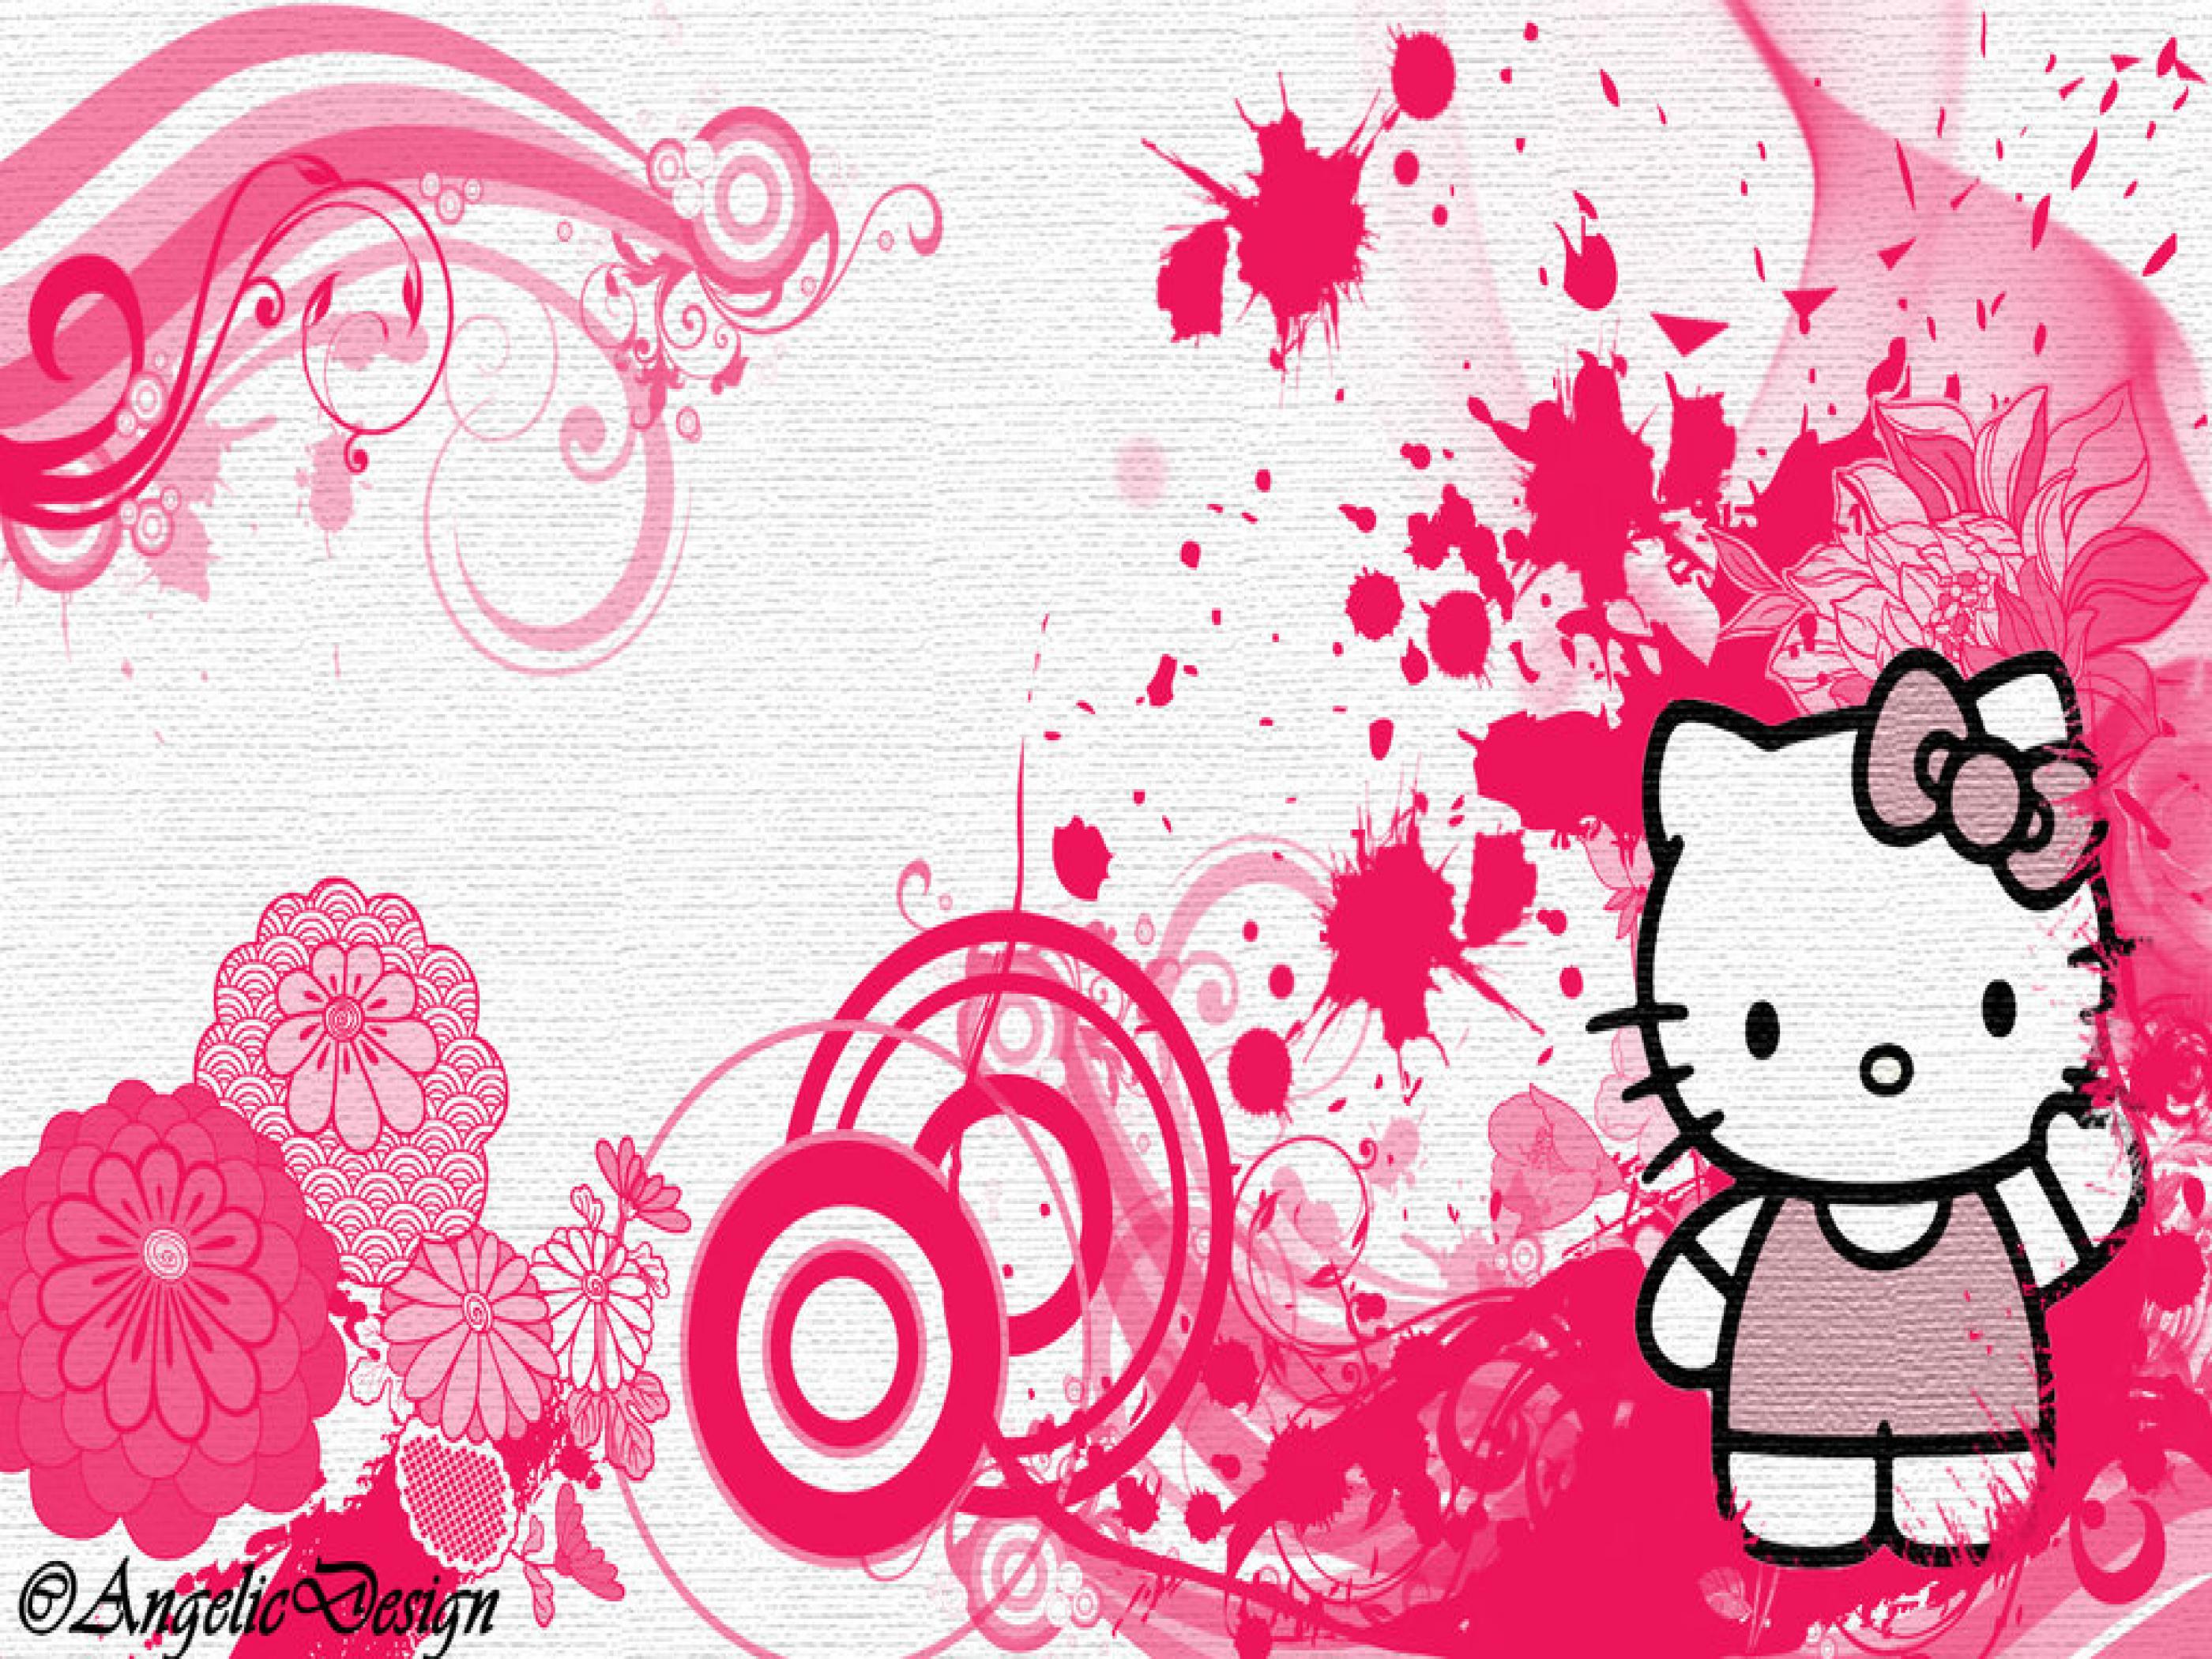 Fondos de Hello Kitty - C97S85I - 4USkY